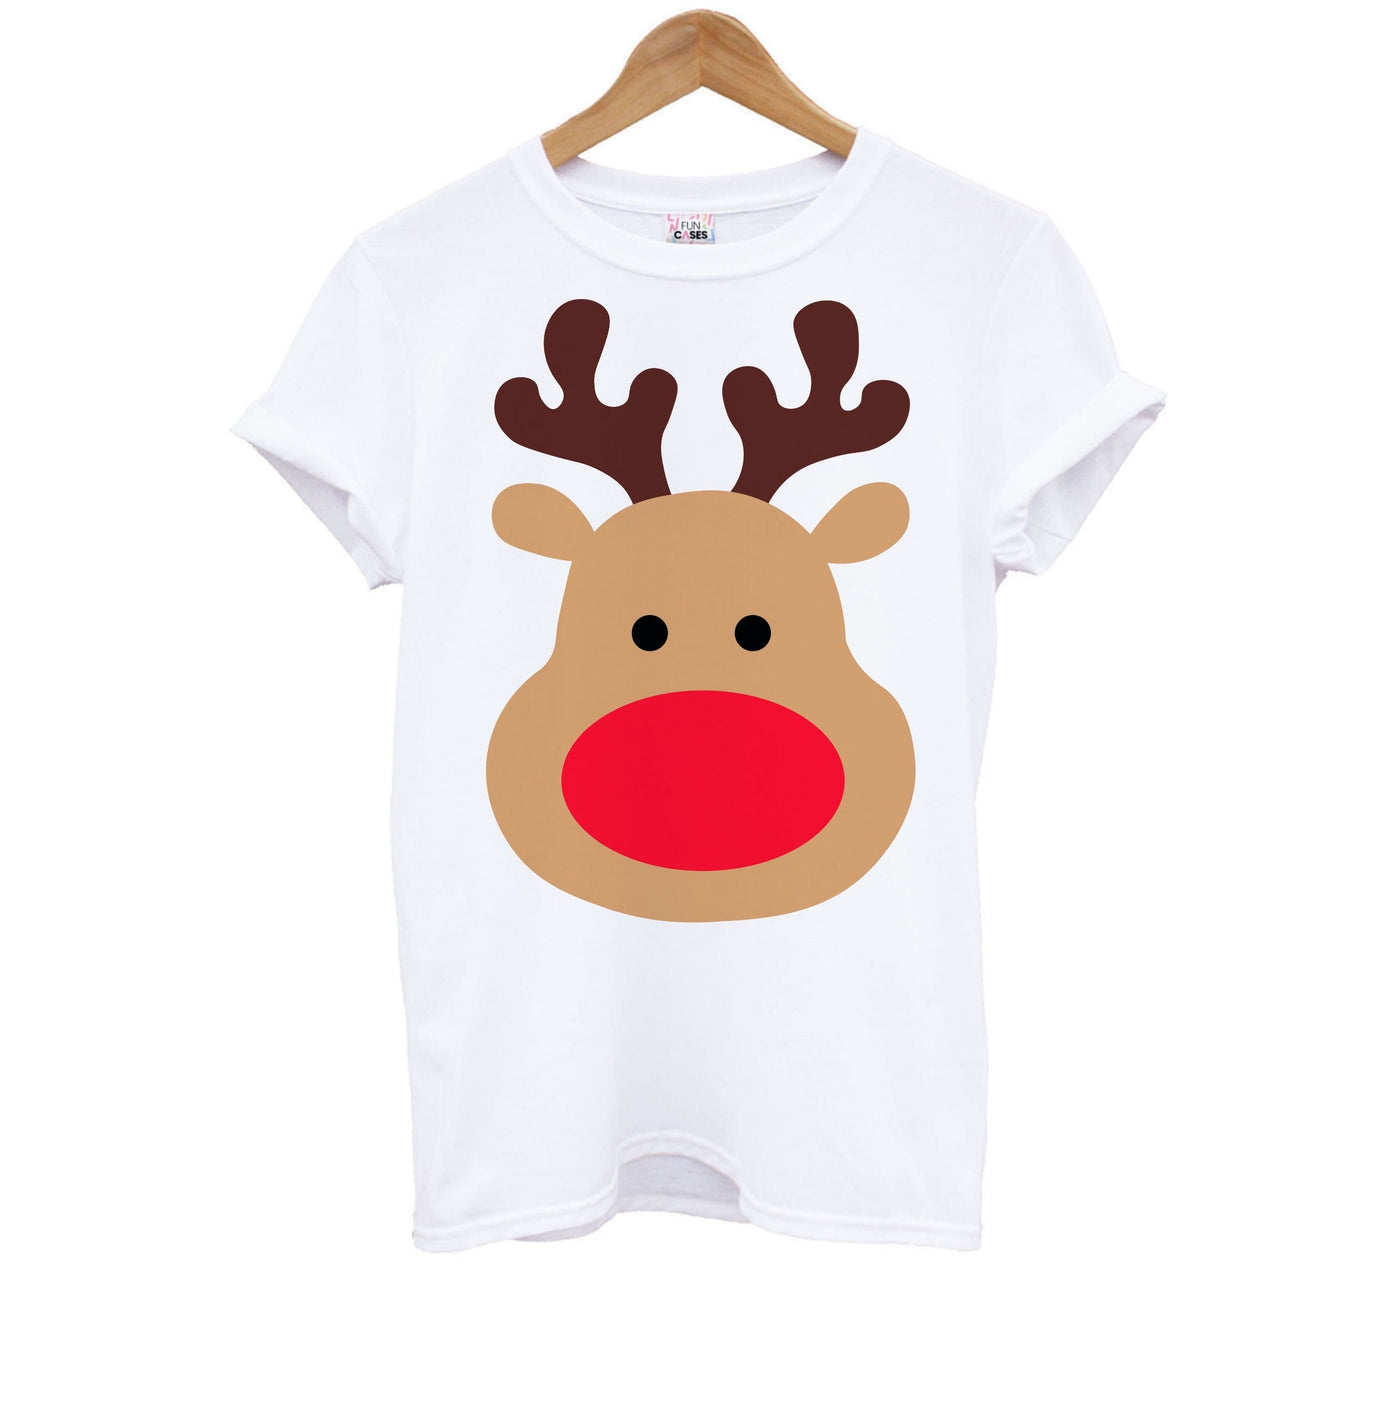 Rudolph Face - Christmas Kids T-Shirt